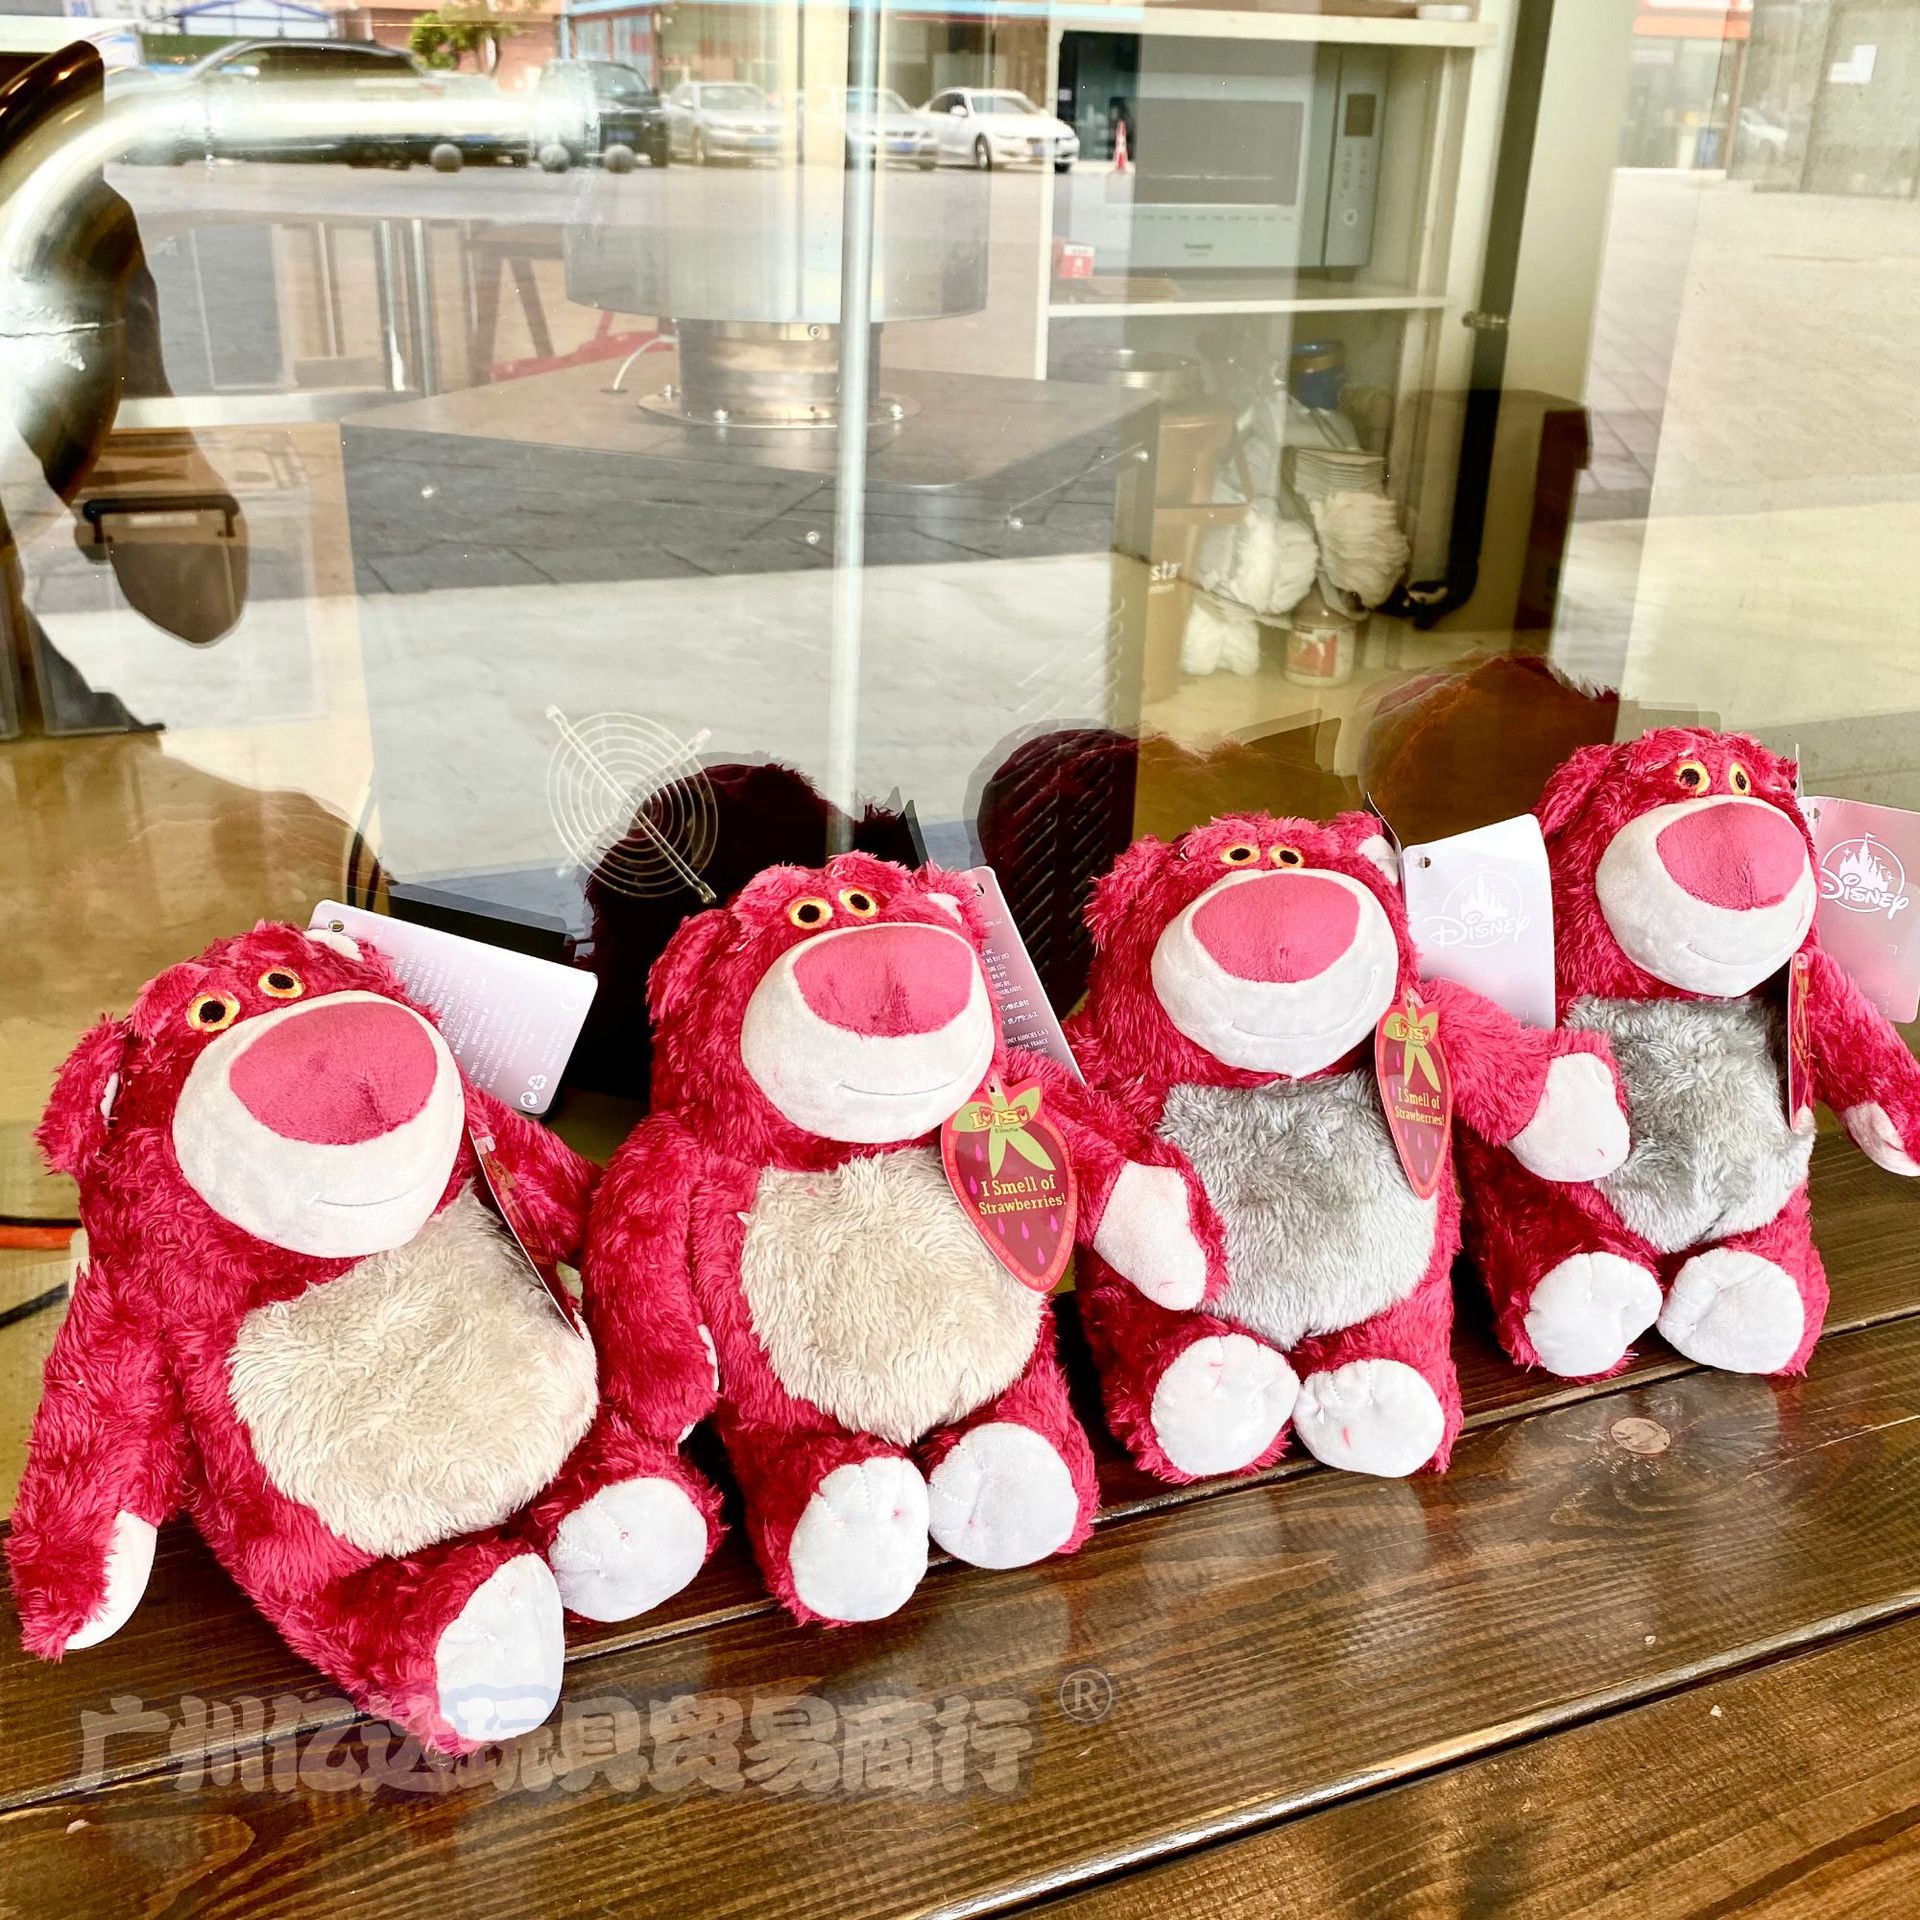 批发草莓熊公仔毛绒玩具草莓味熊红色泰迪熊玩偶超大娃娃夹娃娃机